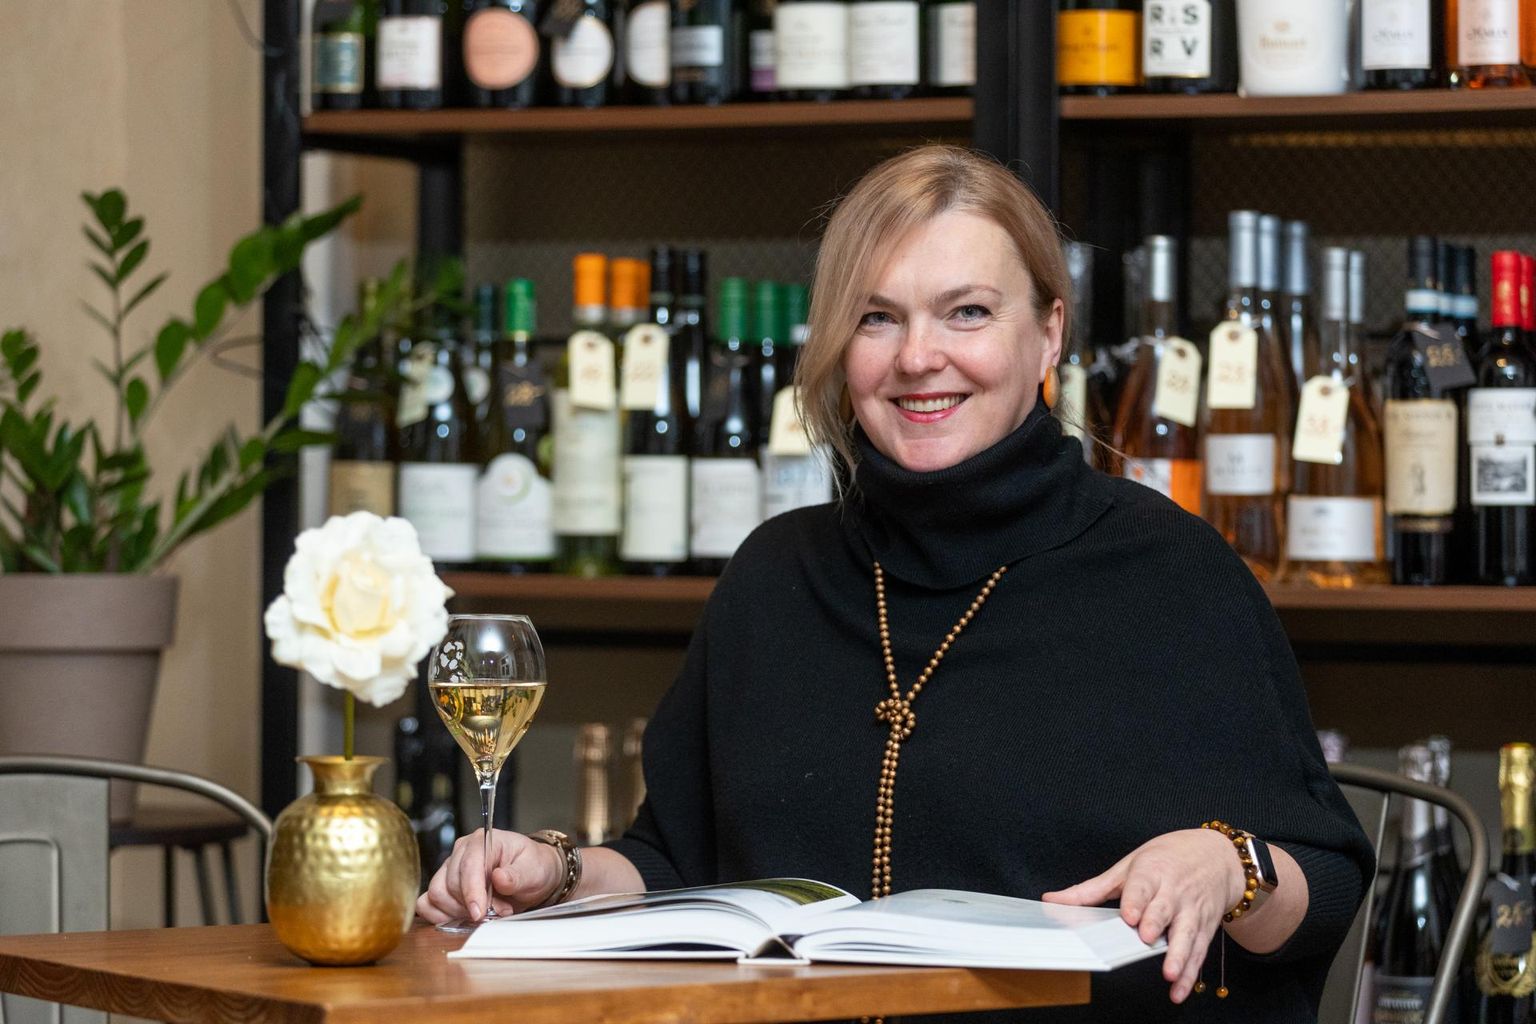 Maie Urbas keeras elus uue lehekülje ja avas Rakveres vinoteegi, mis pälvis ettevõtlusauhindade jagamisel julge alustaja tiitli.